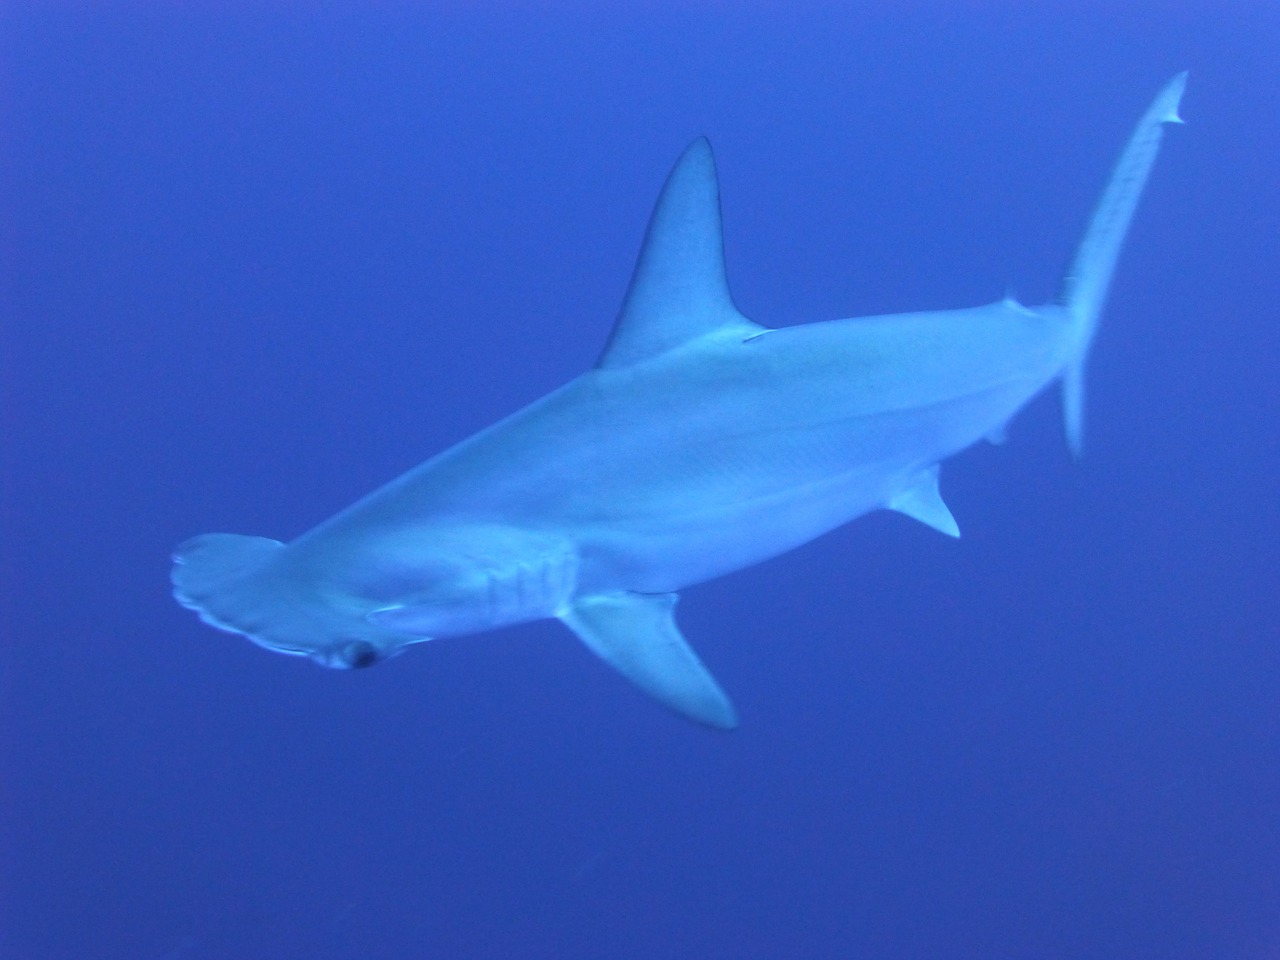 Galapagos: marquage de femelles requin-marteau pour localiser les zones de naissance